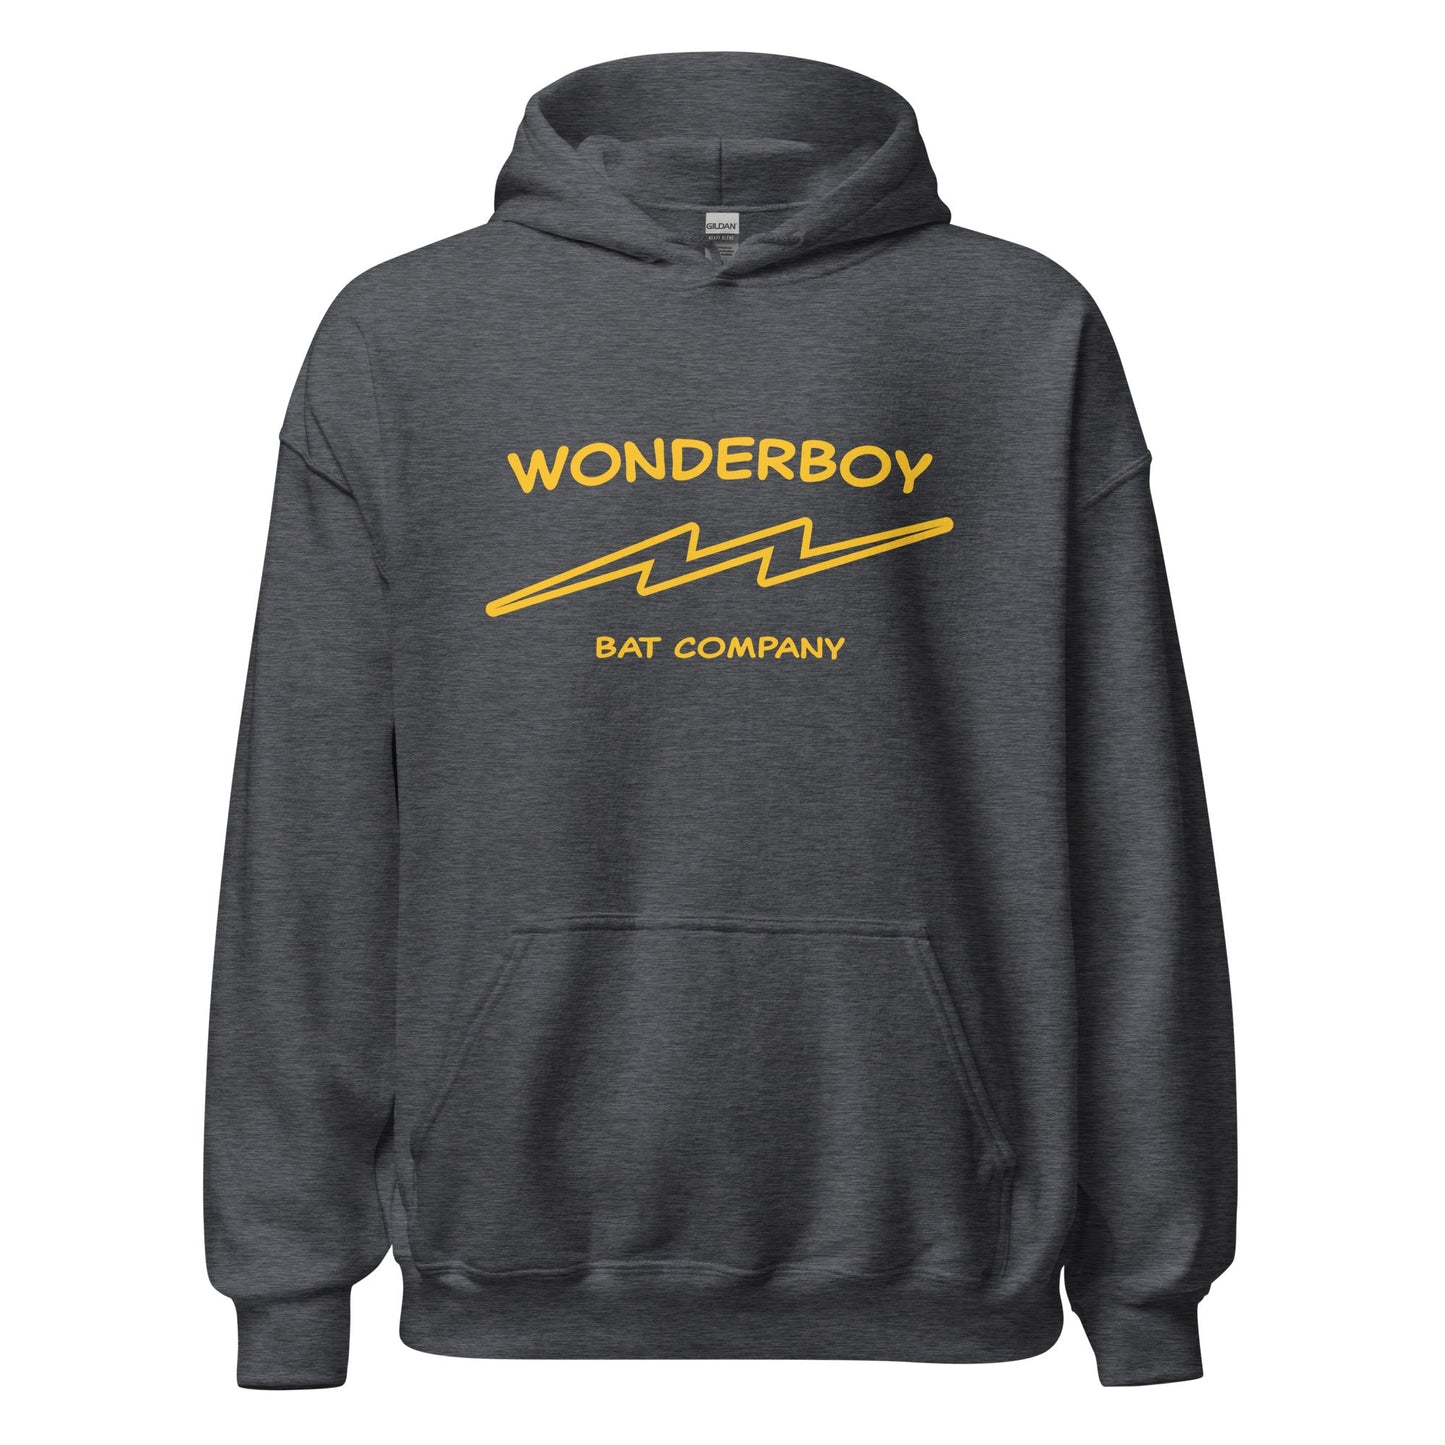 Wonderboy Bat Co Hoodie - Classic 80s Movie Natural Sweatshirt